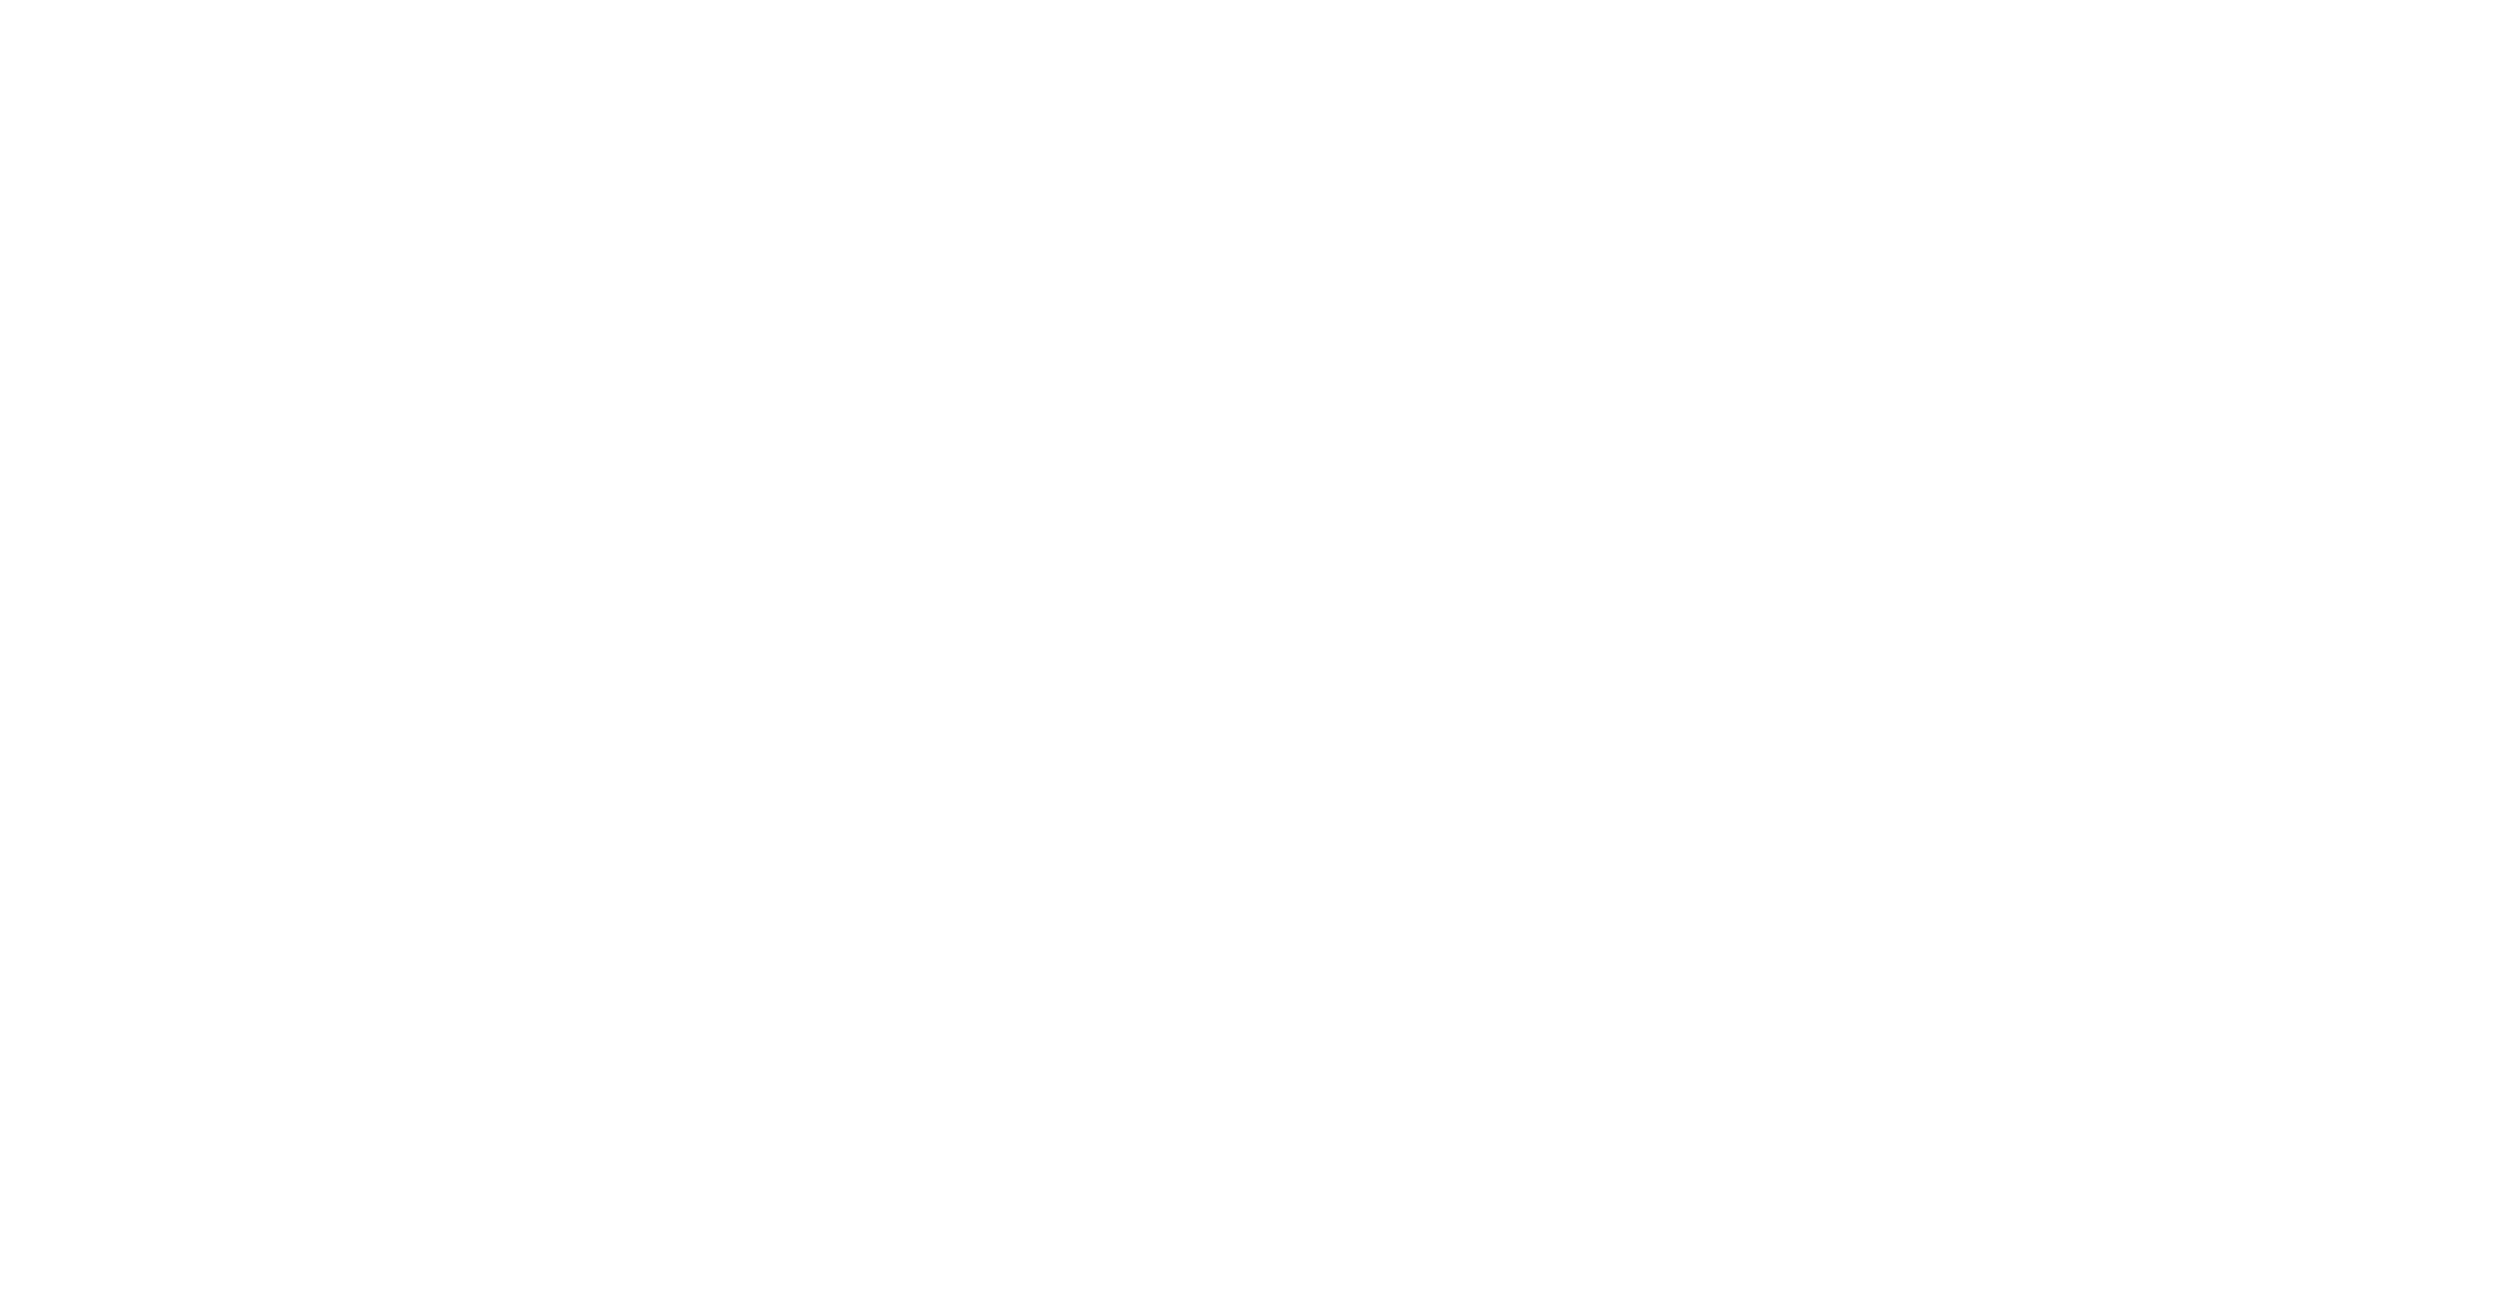 Vaucluse Provence Attractivité